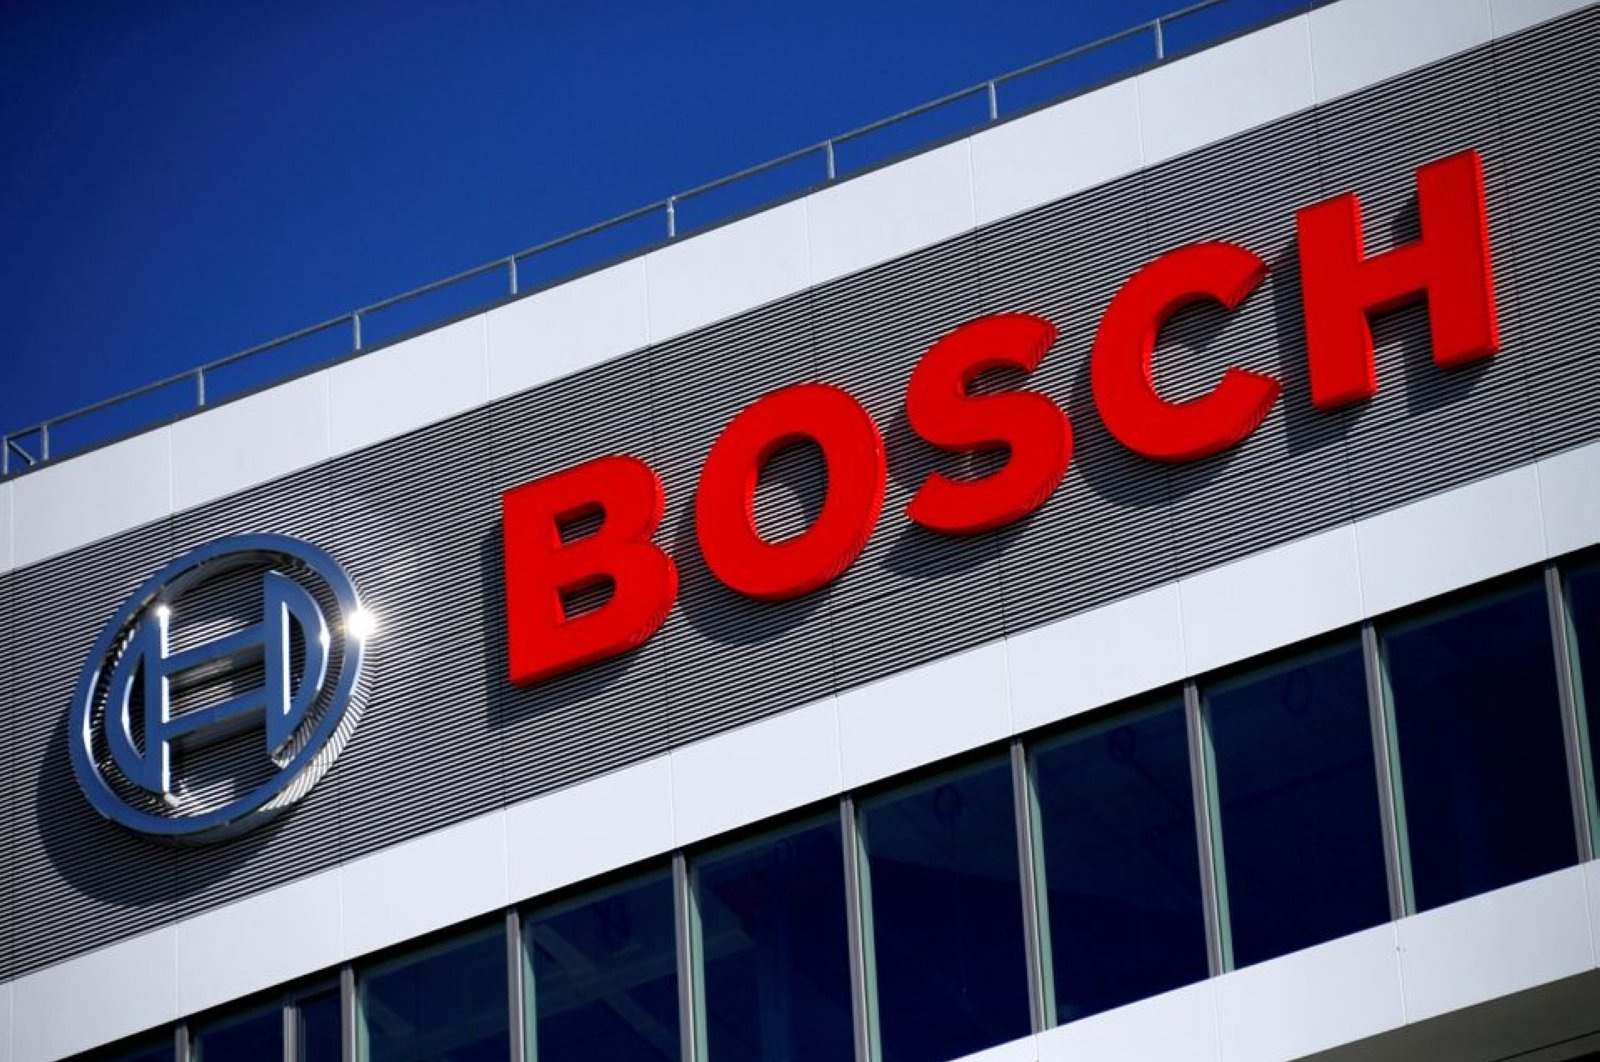 Raksasa Jerman Bosch memprediksi krisis chip akan berlanjut pada 2022